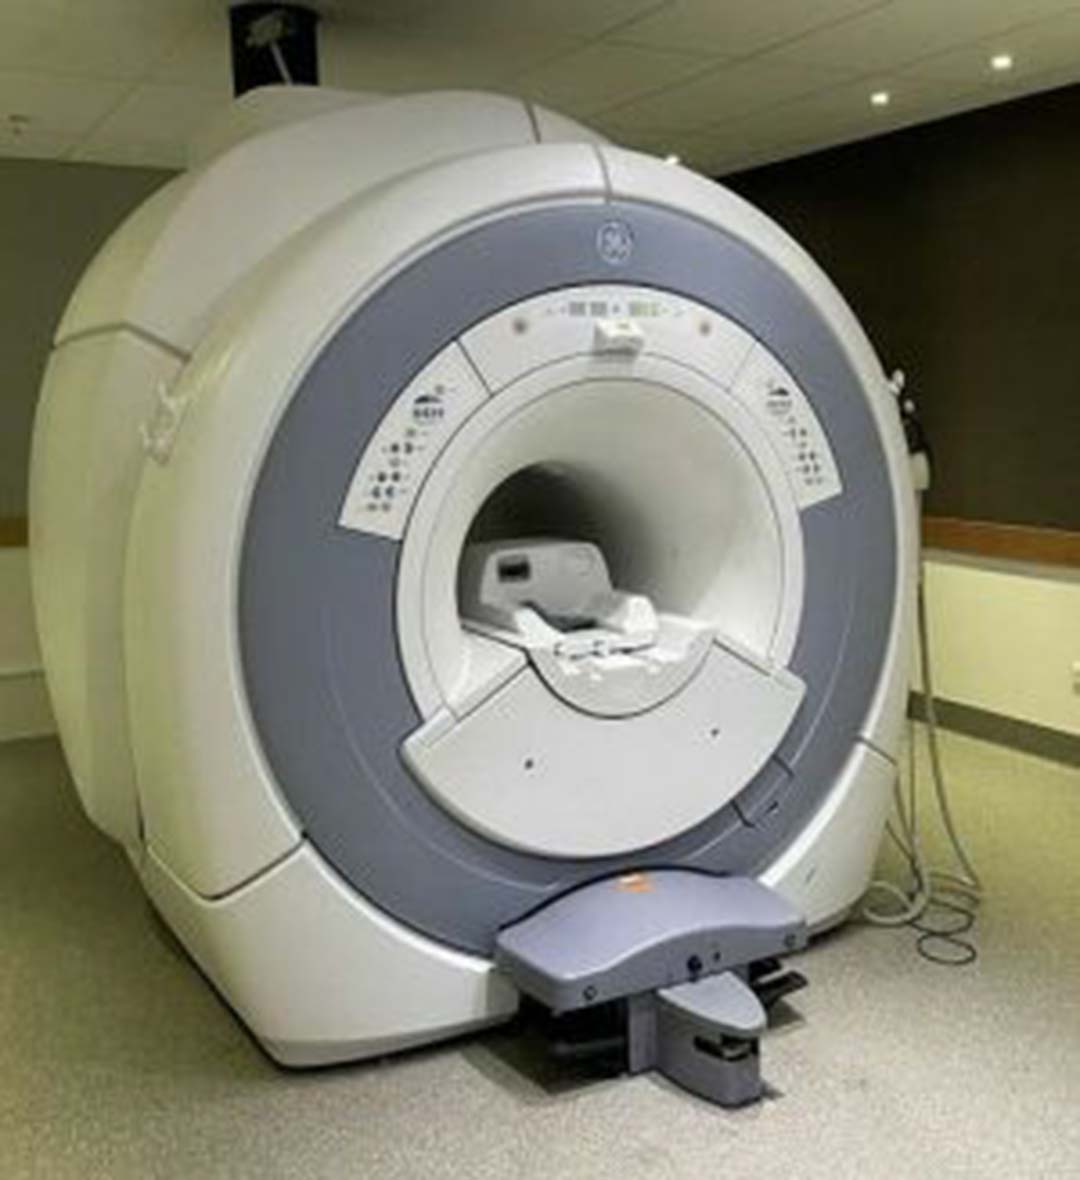 2012 GE Optima MR360 1.5T 8 Channel MRI